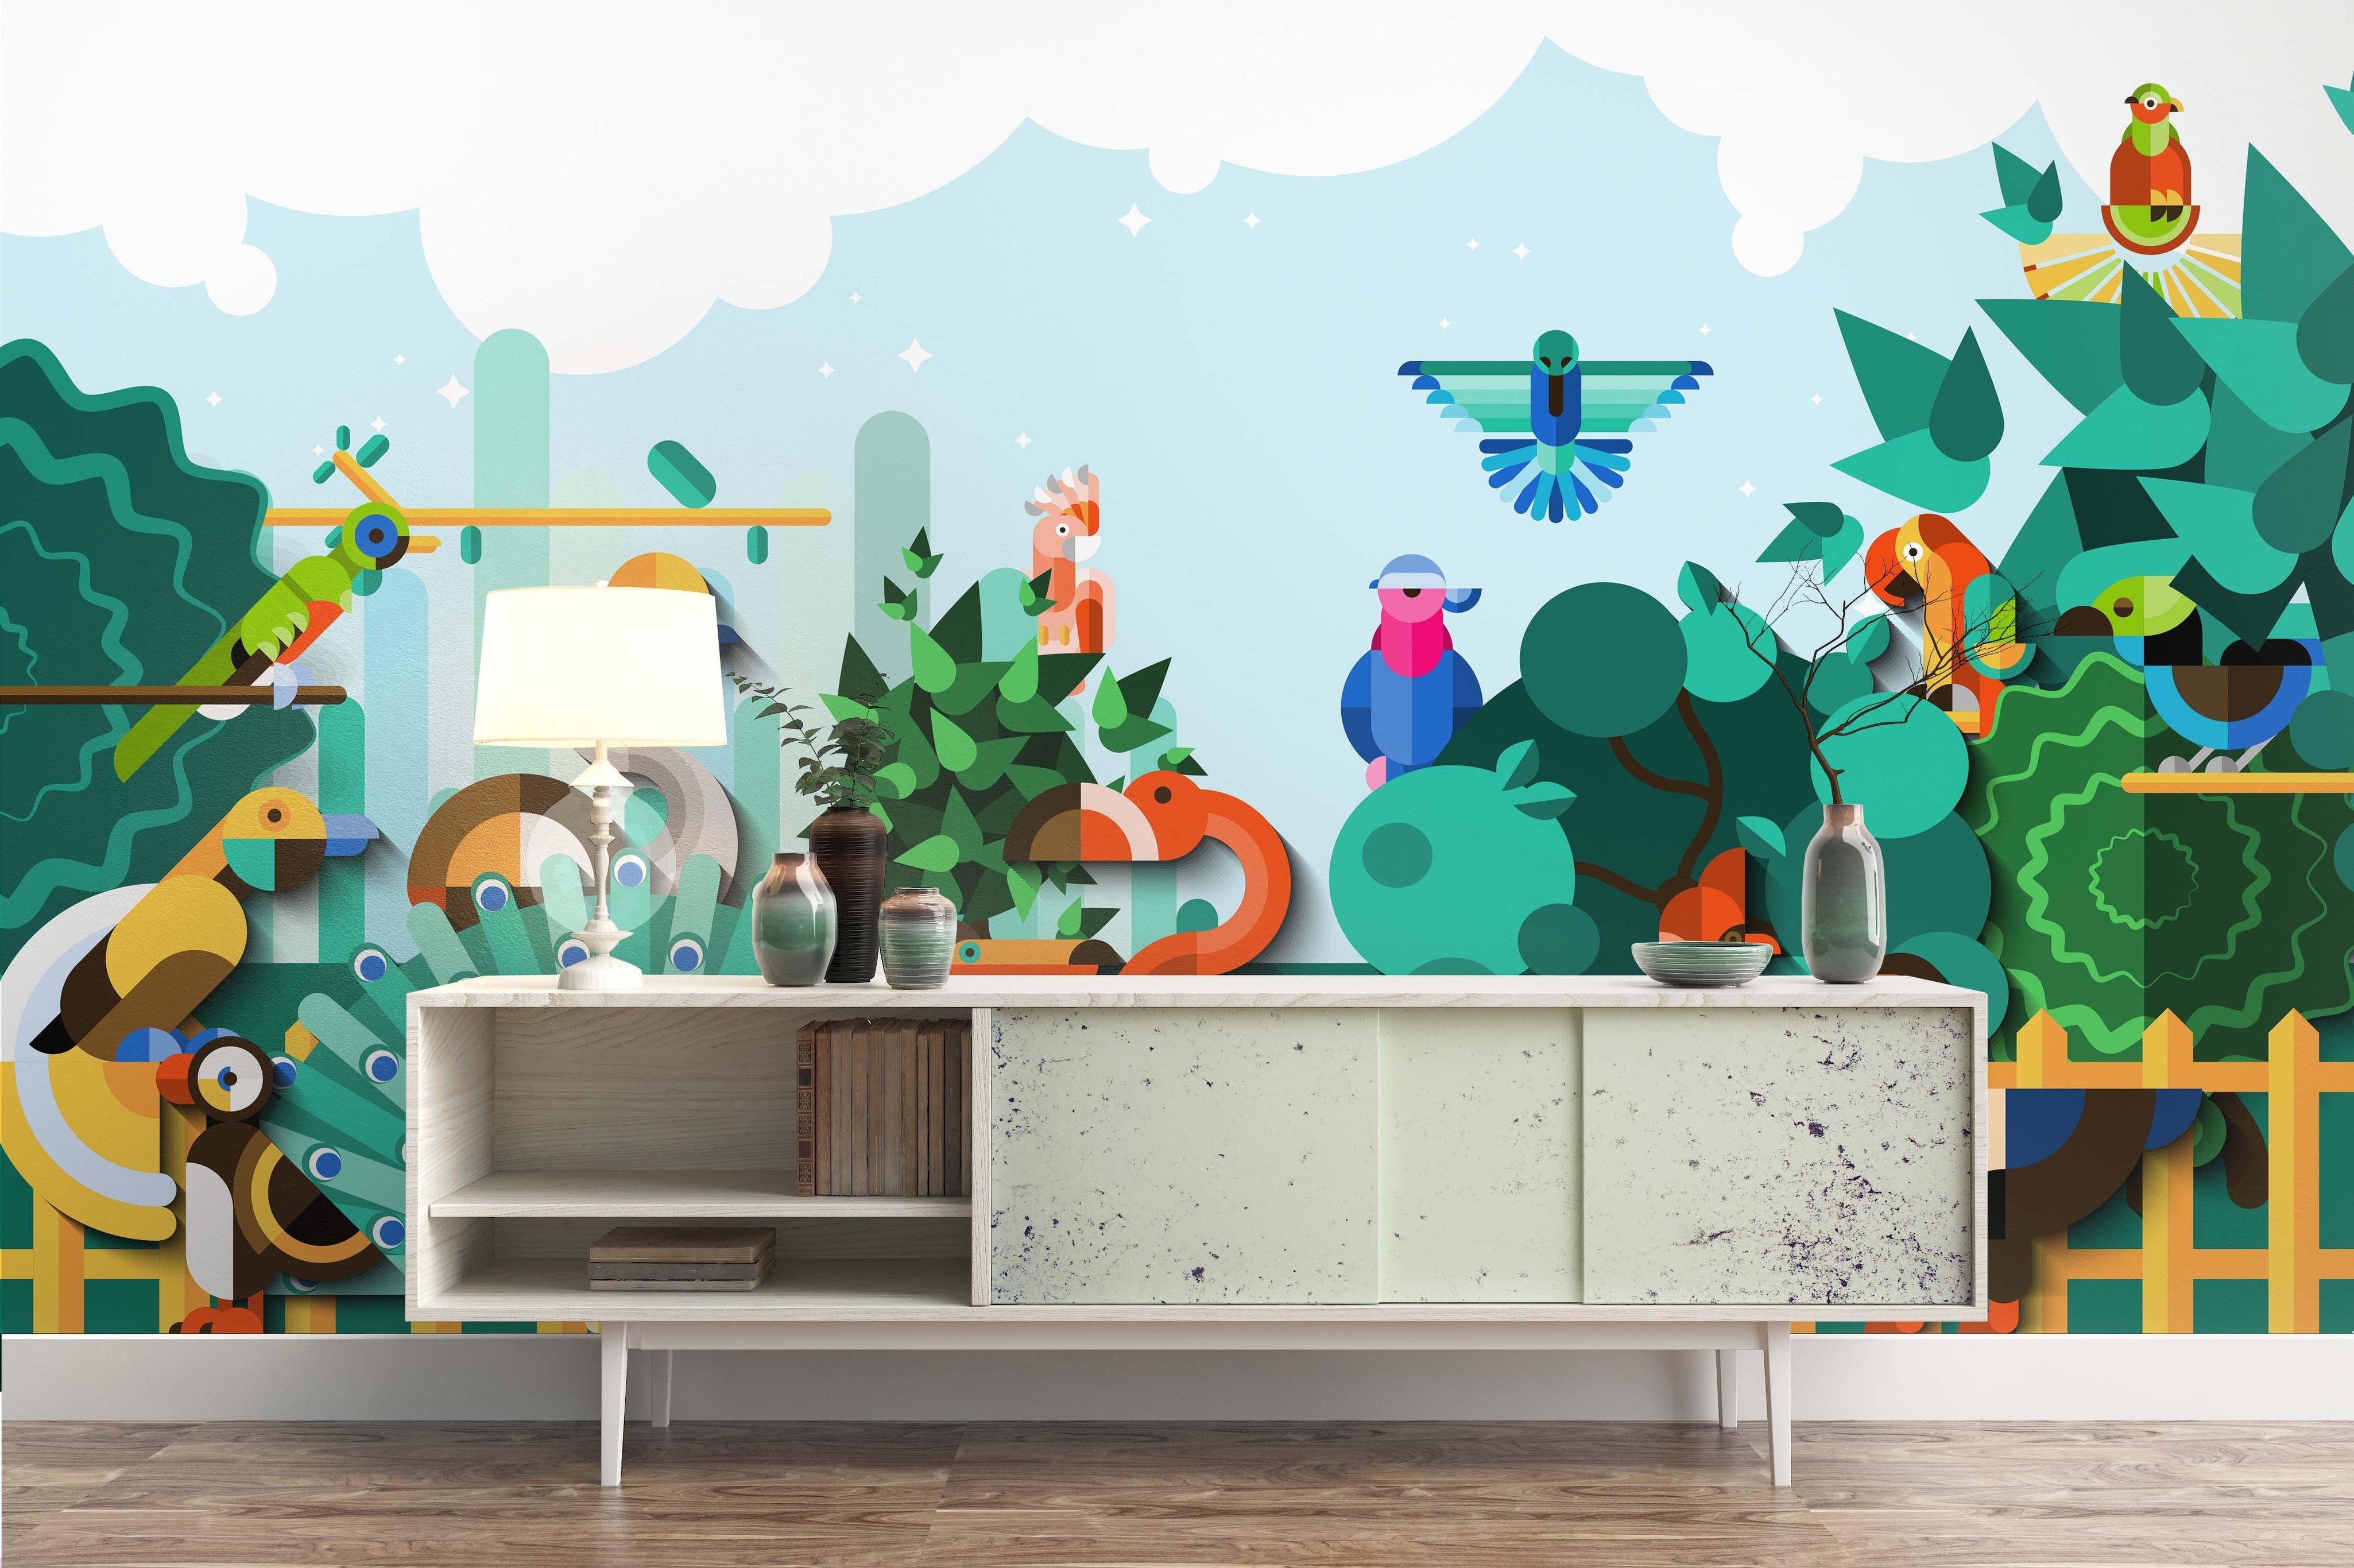 3D Abstract Green Forest Animals Wall Mural Wallpaper 43- Jess Art Decoration